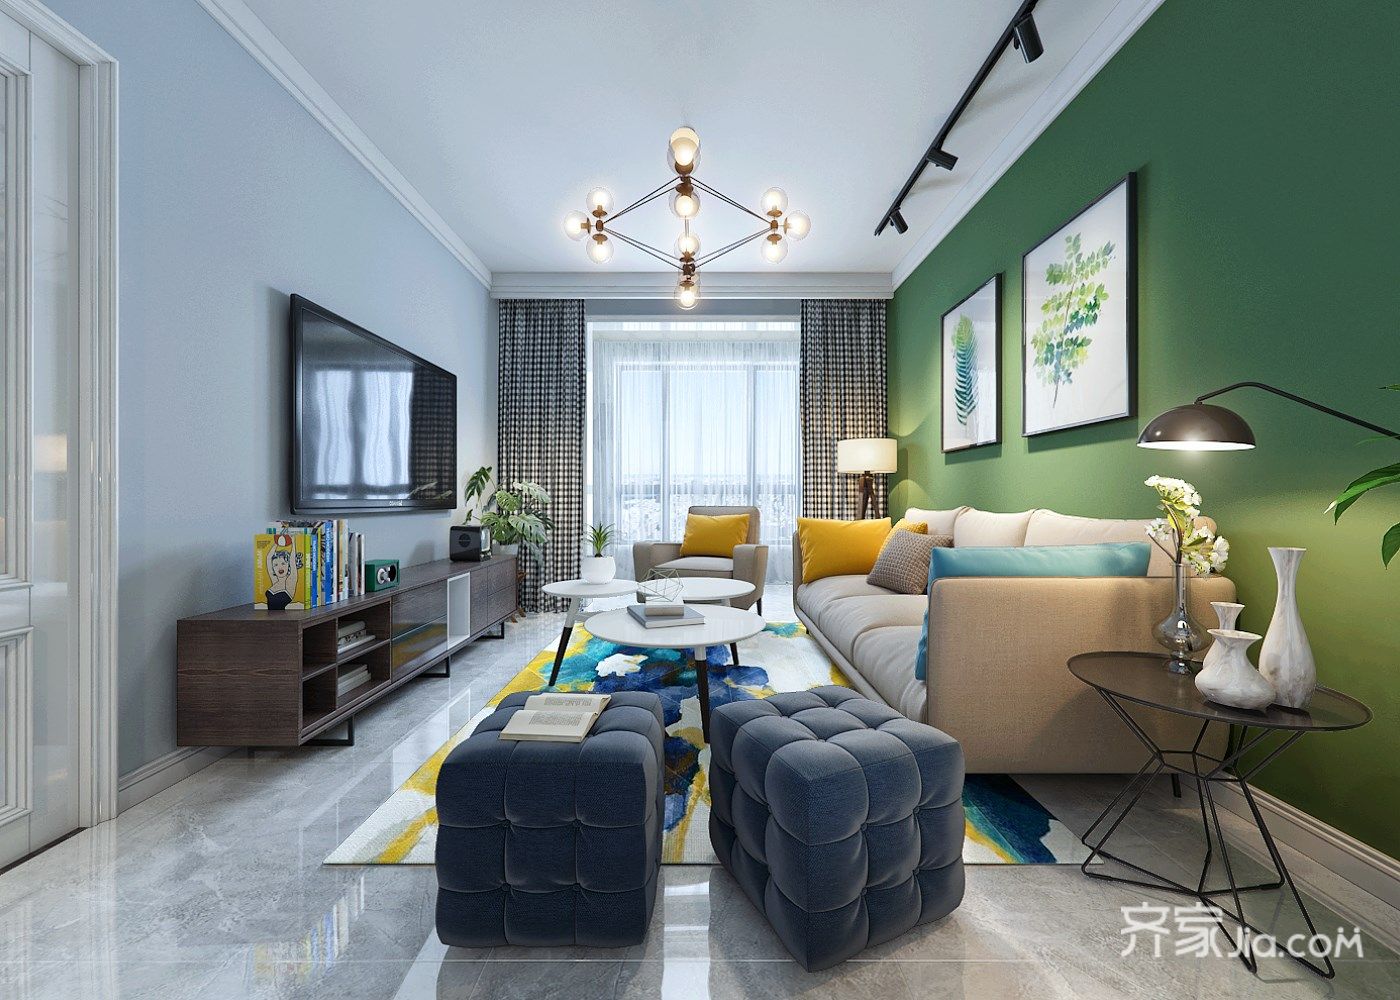 浅绿背景墙卧室 - 慵懒家居搭配设计设计效果图 - 躺平设计家